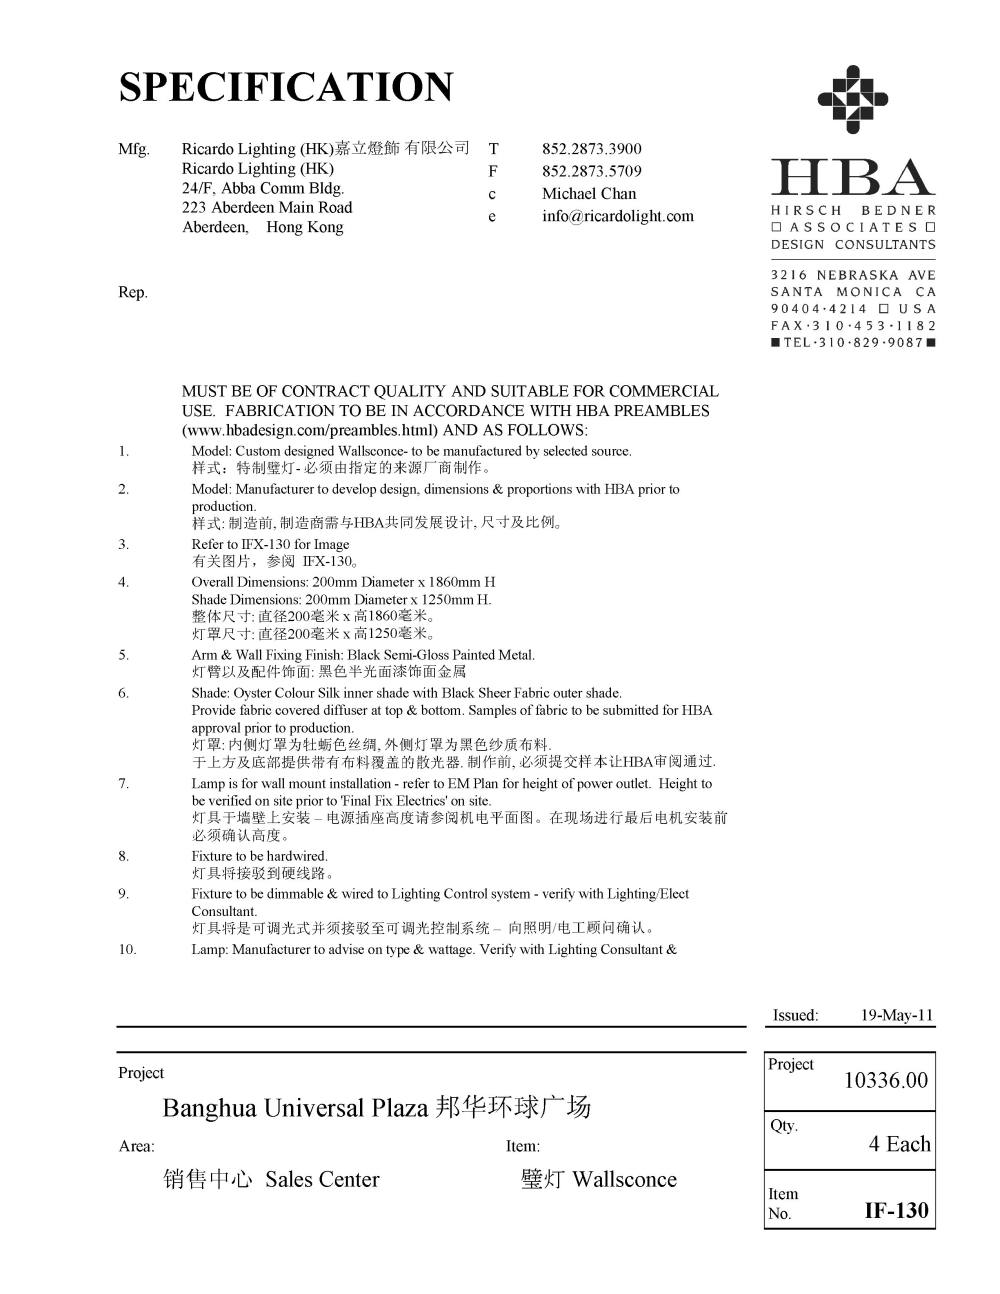 HBA新作——广州邦华环球广场销售中心（资料补充）_家具设计说明书_页面_51.jpg